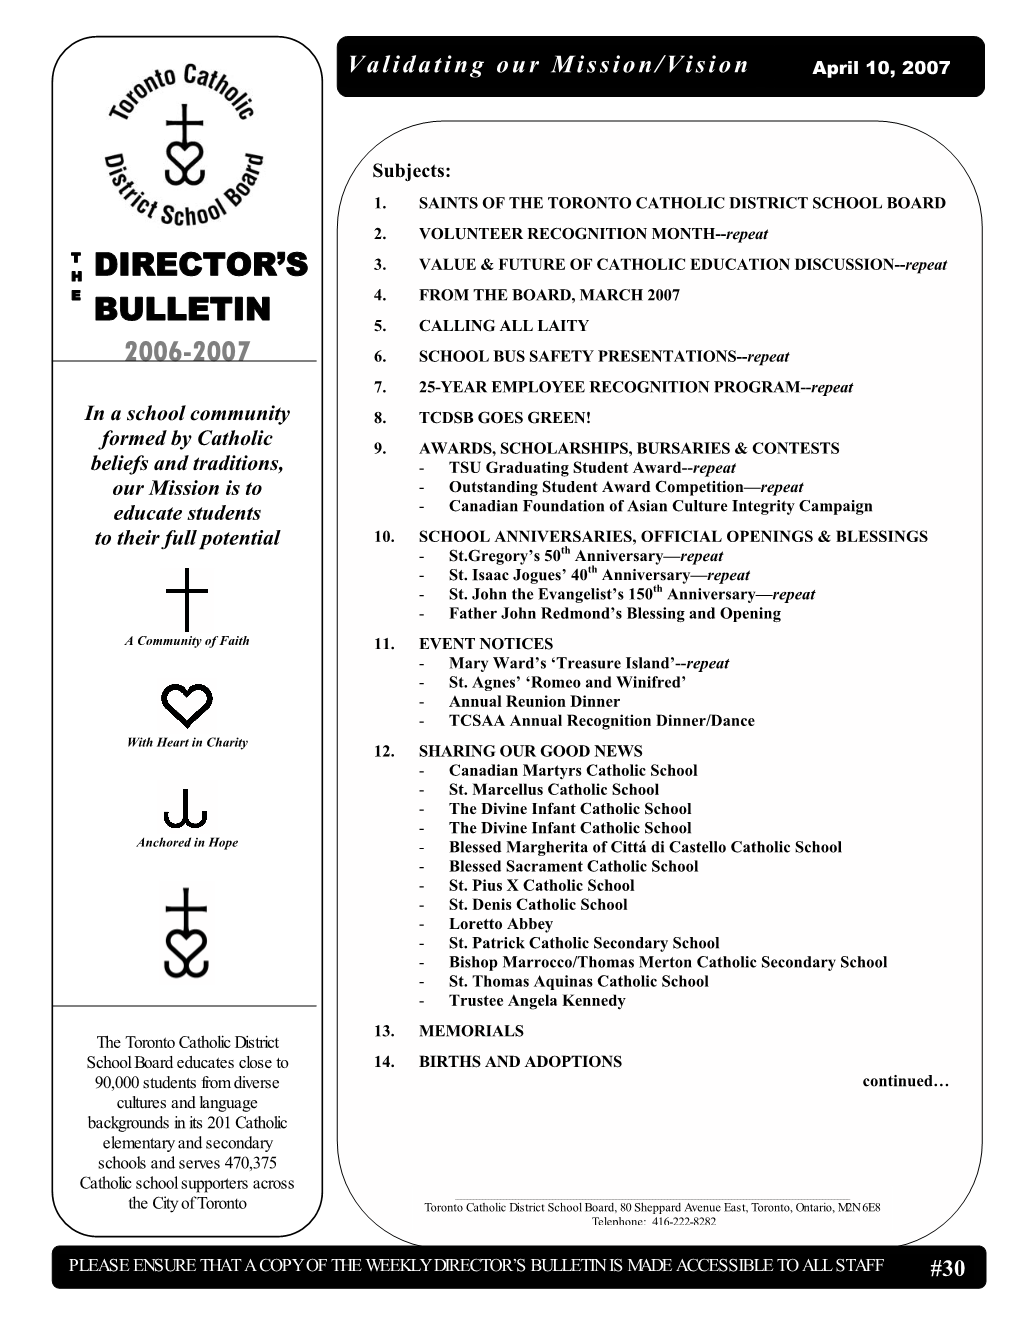 Director's Bulletin